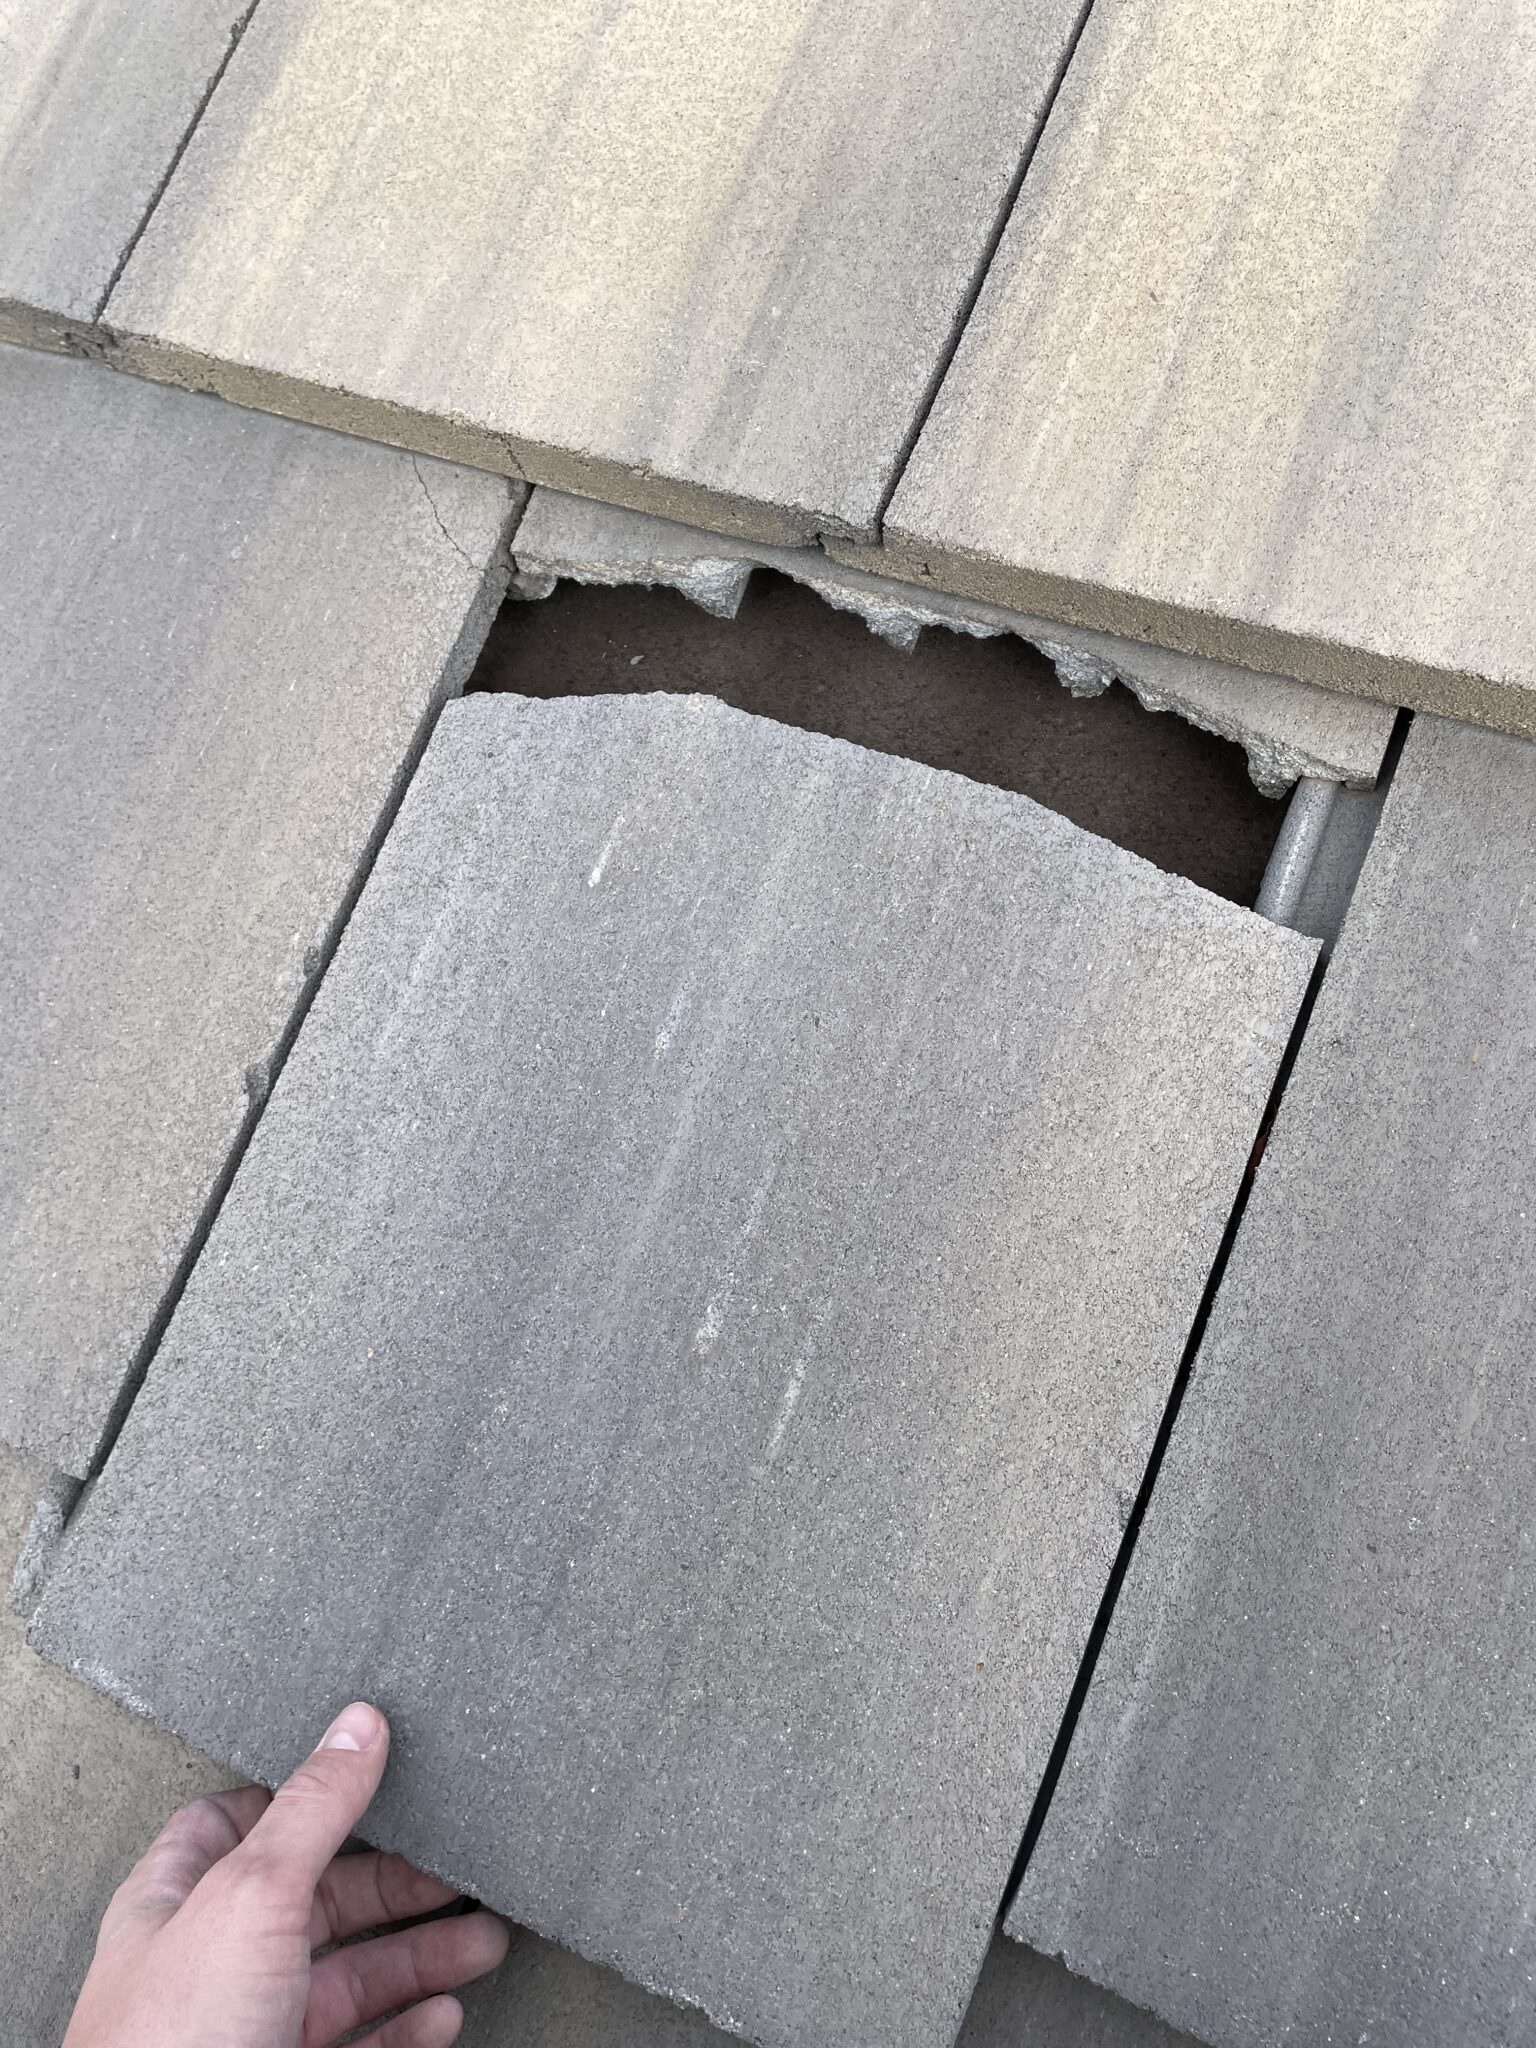 Broken roof tile in need of repair